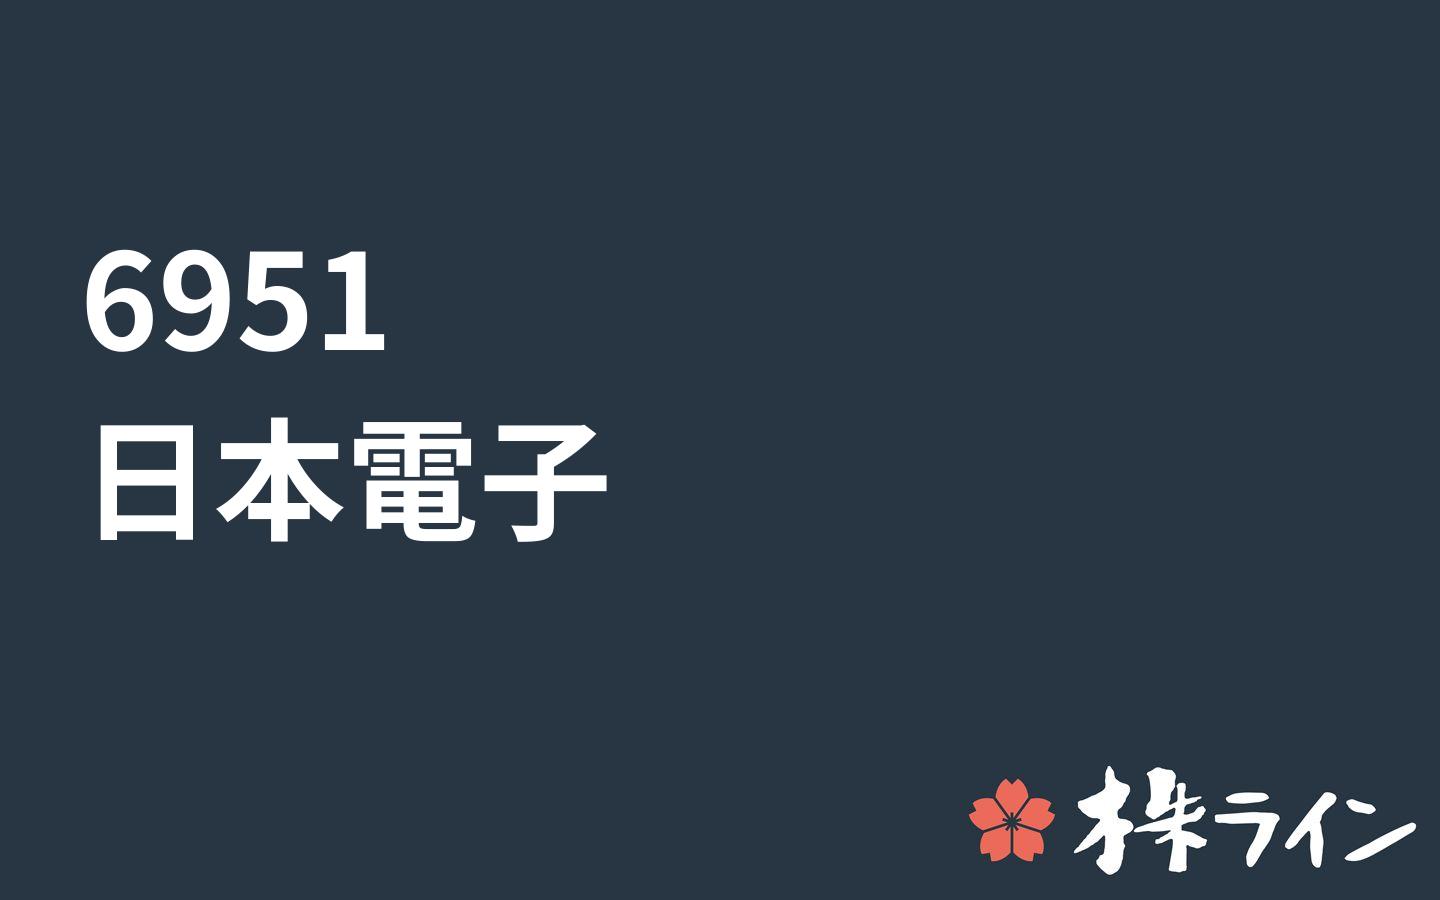 日本電子 6951 株価予想 ツイッター投資家のリアルタイム売買 株ライン